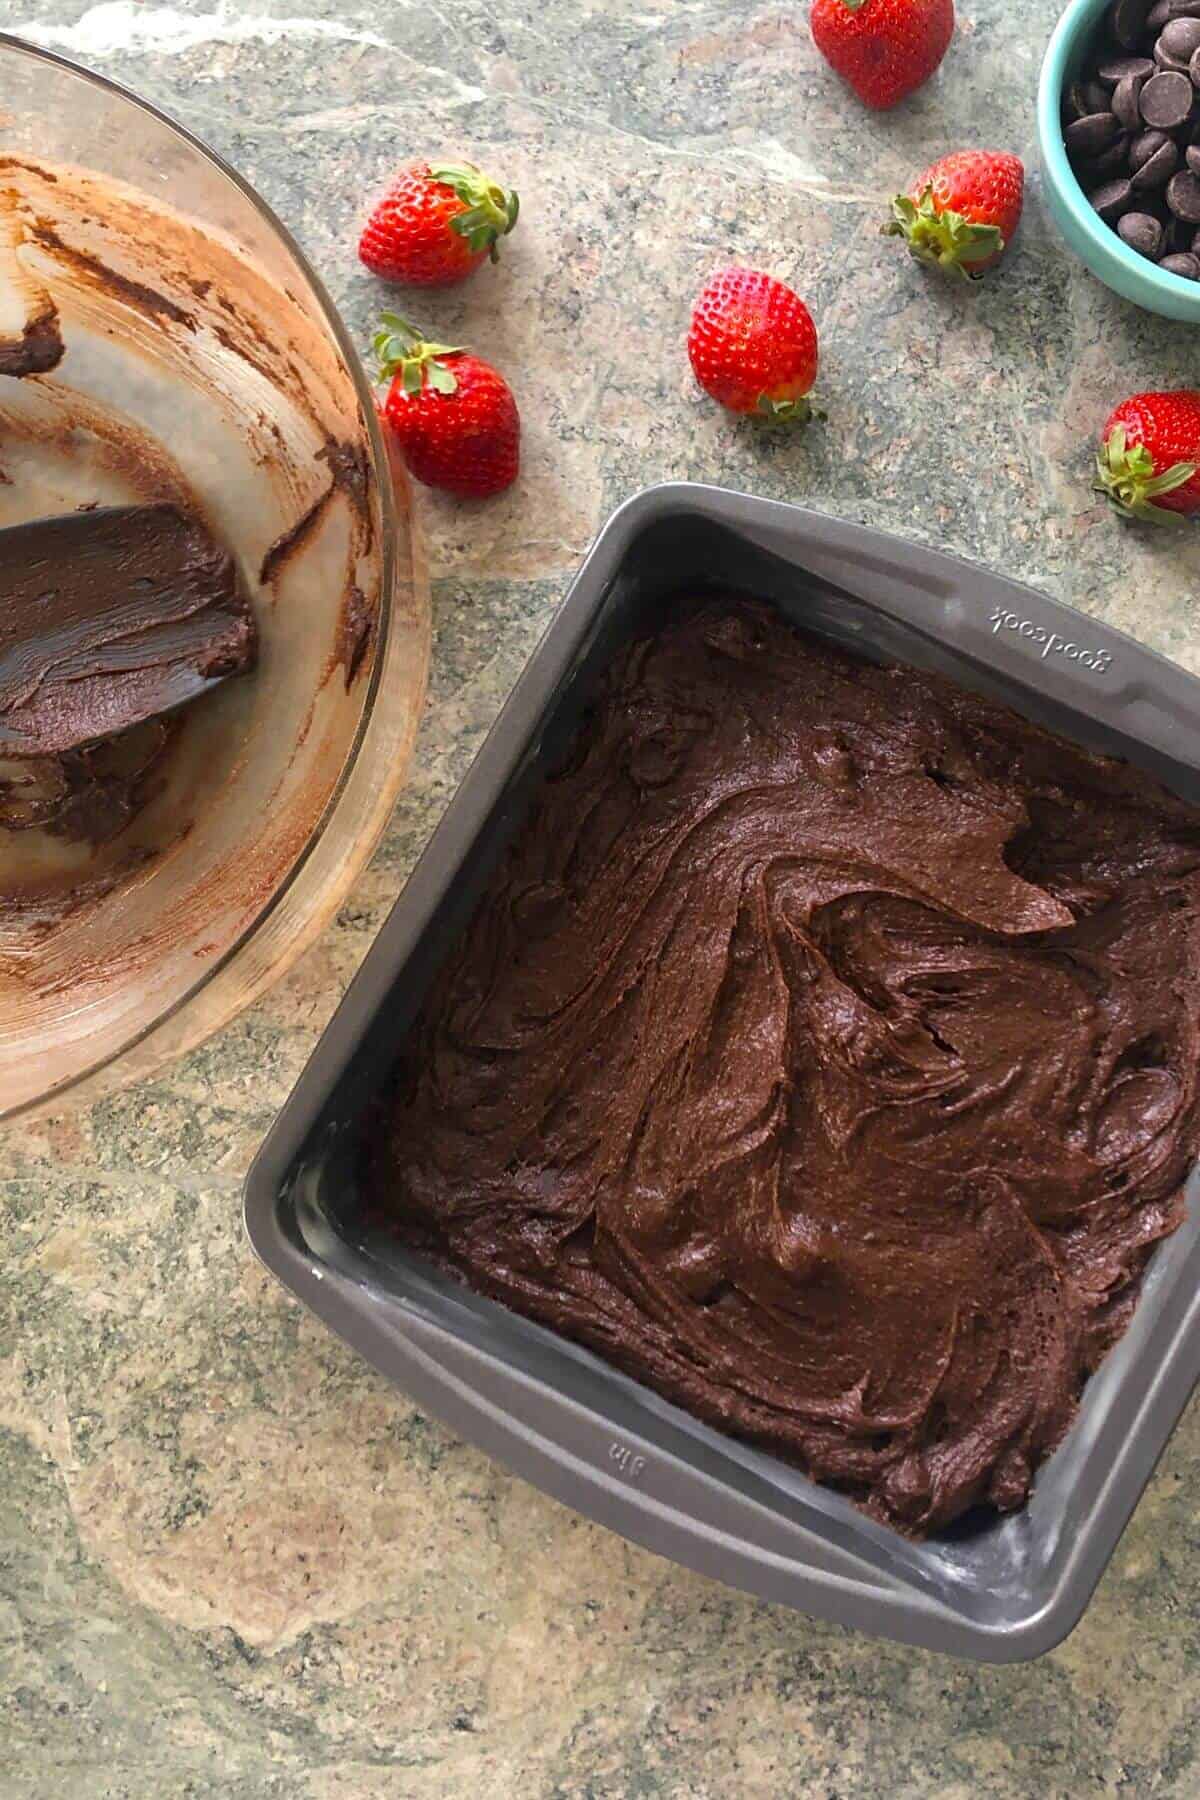 brownie batter in a metal baking pan.